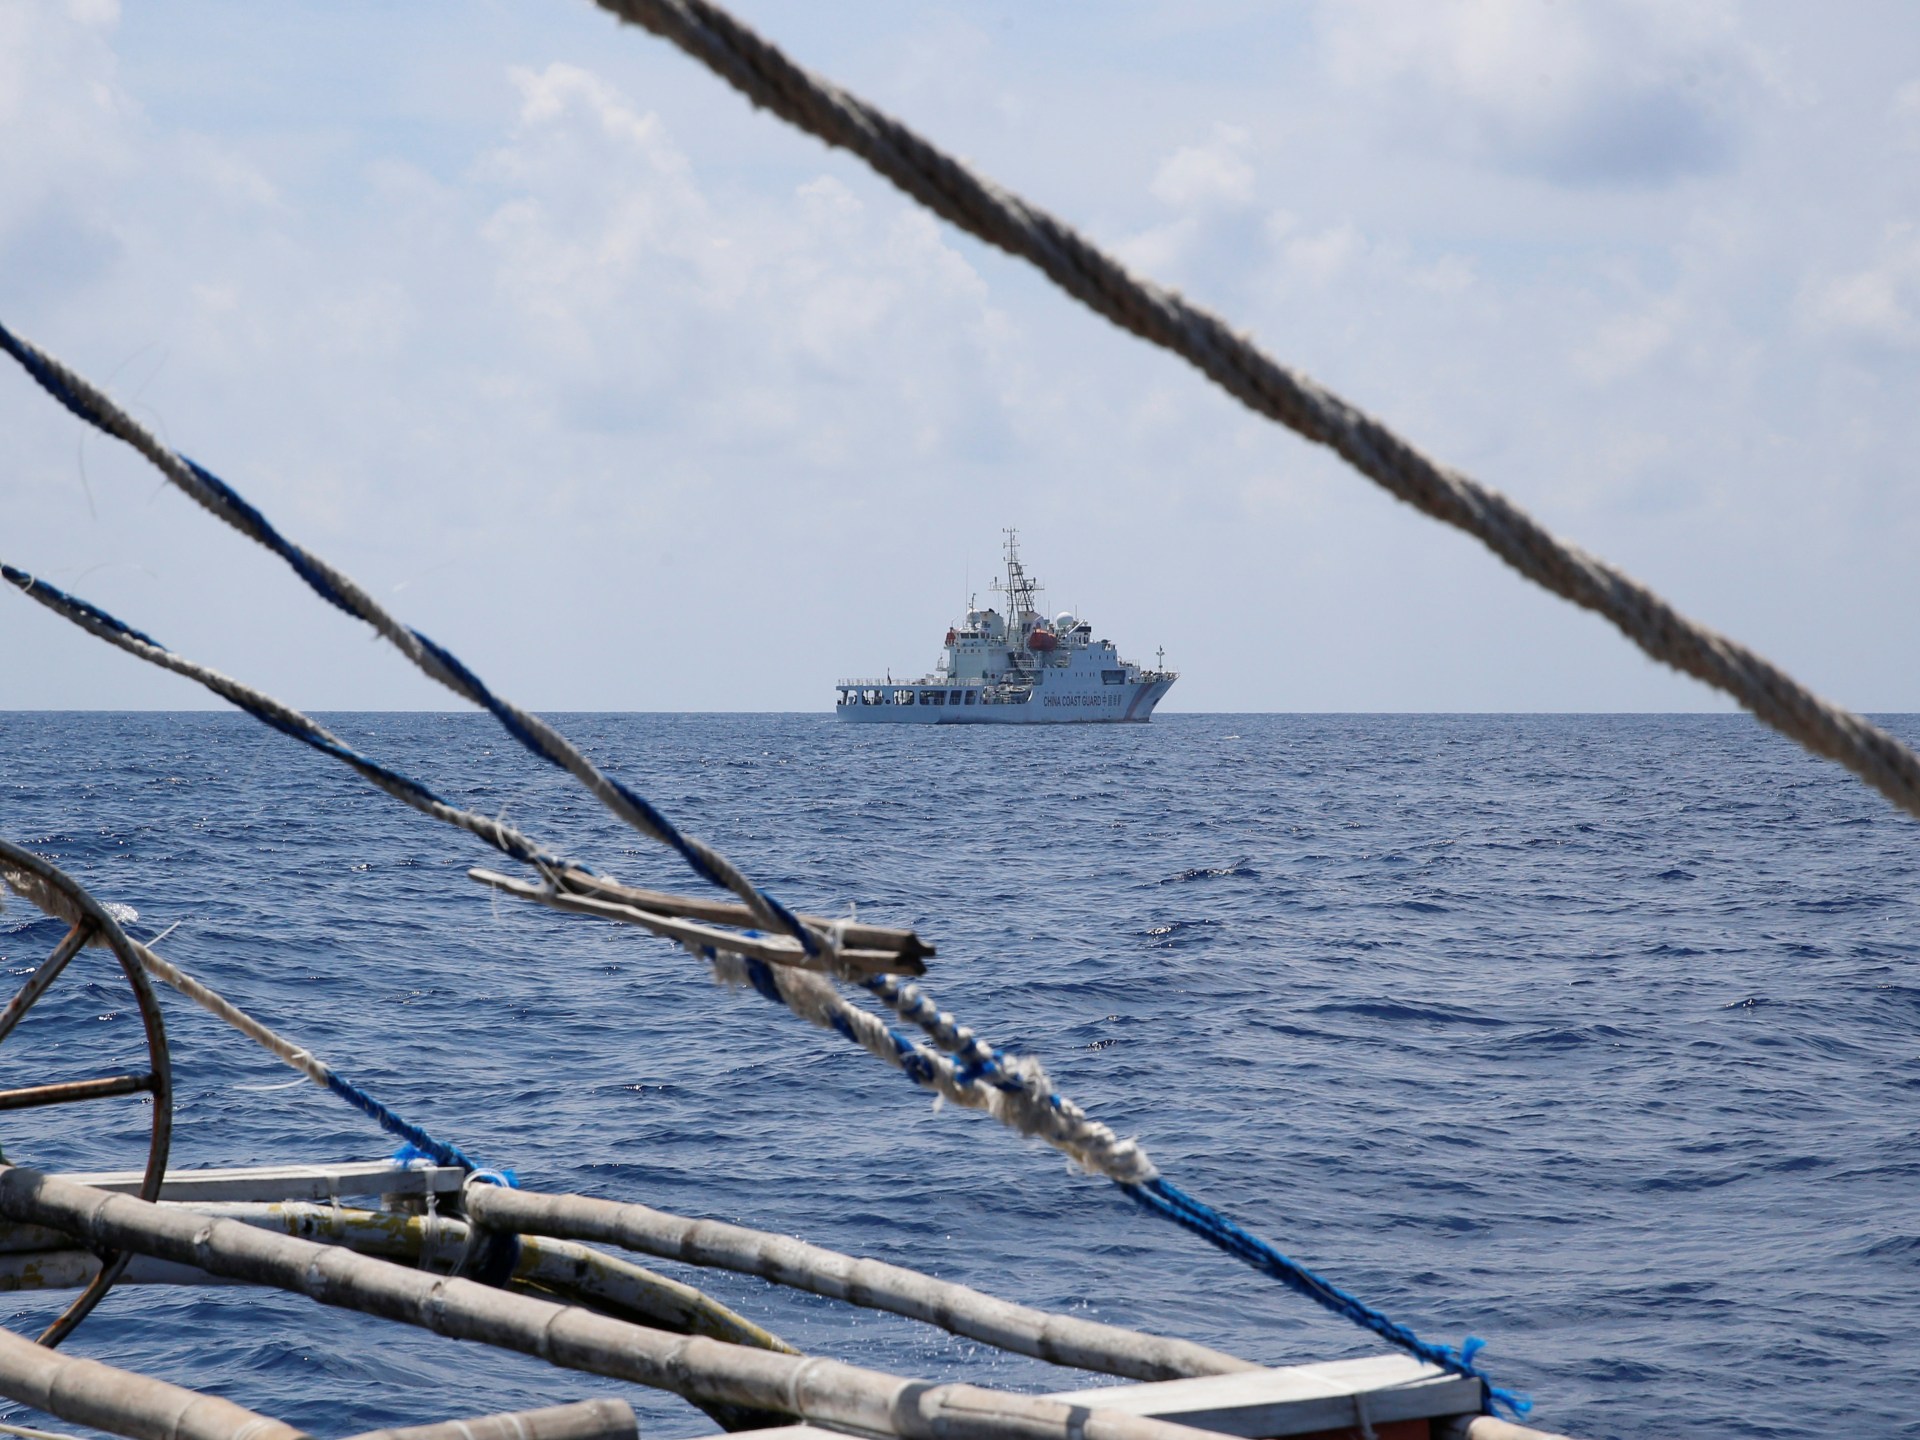 Filipina dan Tiongkok dalam konfrontasi baru di Scarborough Shoal  Berita Laut Cina Selatan